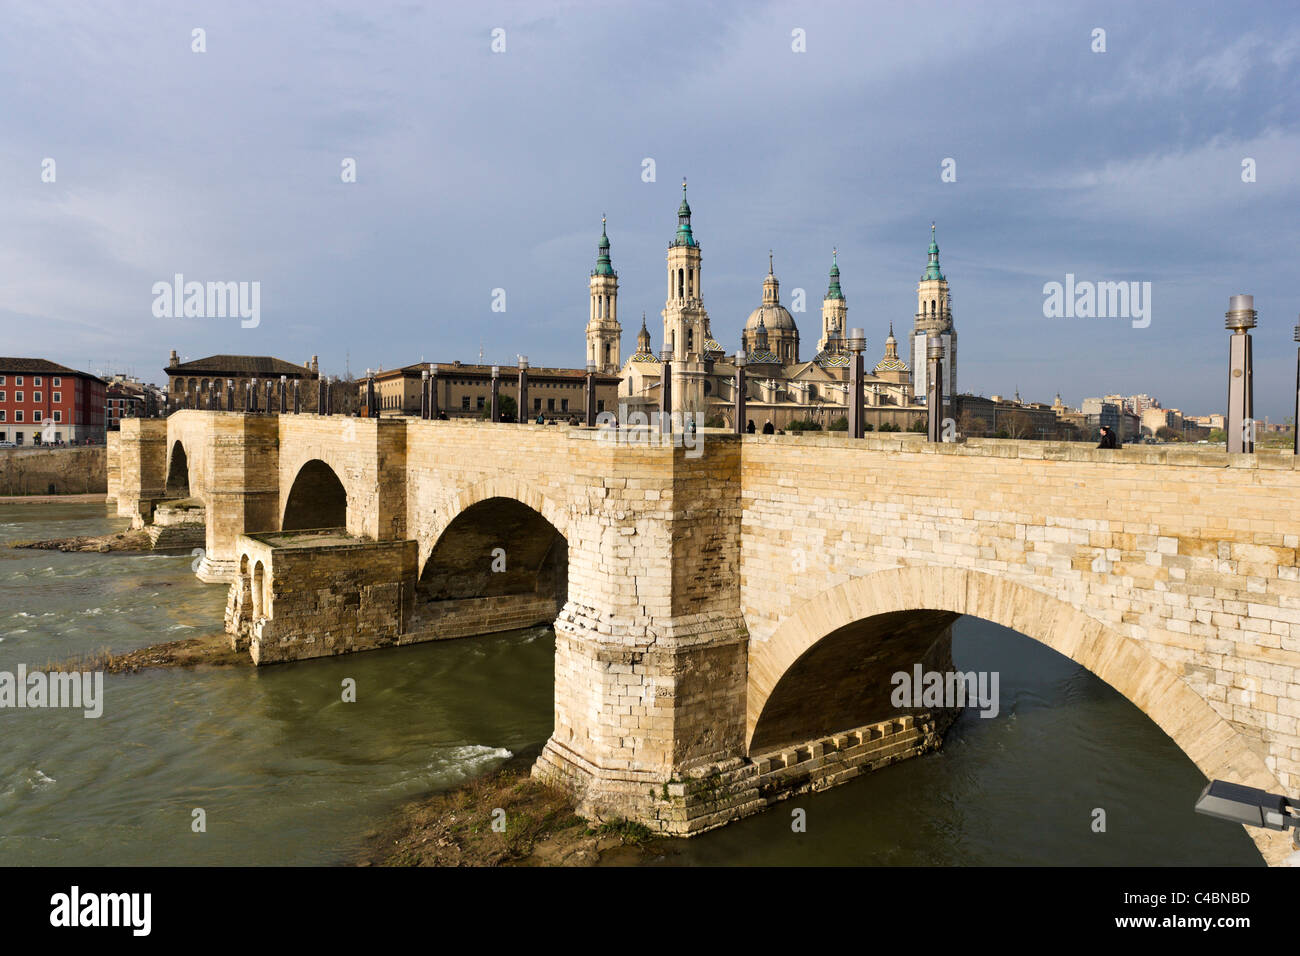 View of the Basilica of Nuestra Senora del Pilar and the Puente de Piedra on the River Ebro, Zaragoza, Aragon, Spain Stock Photo